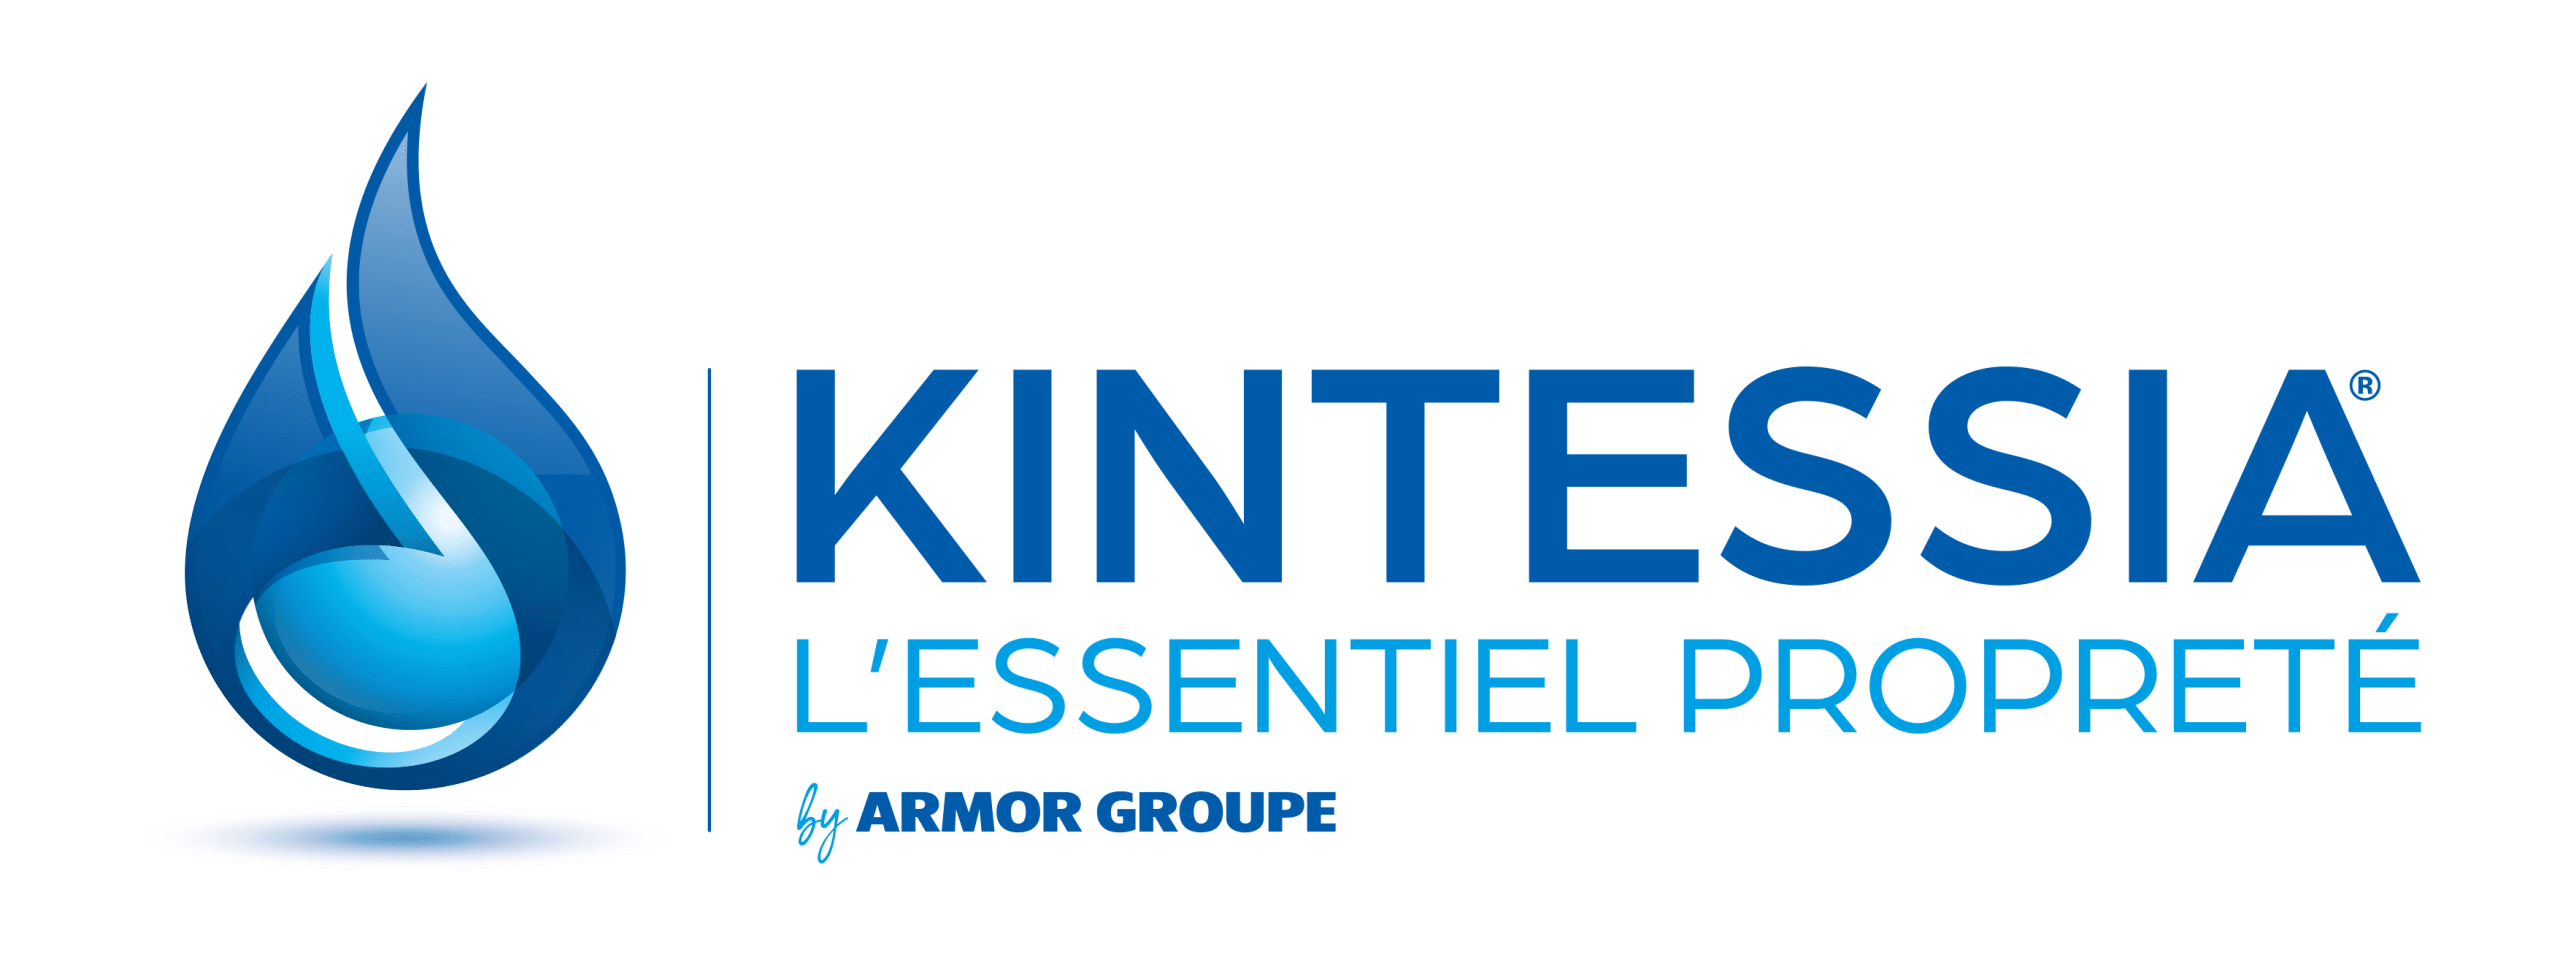 Kintessia | Entreprise de nettoyage et propreté | Paris